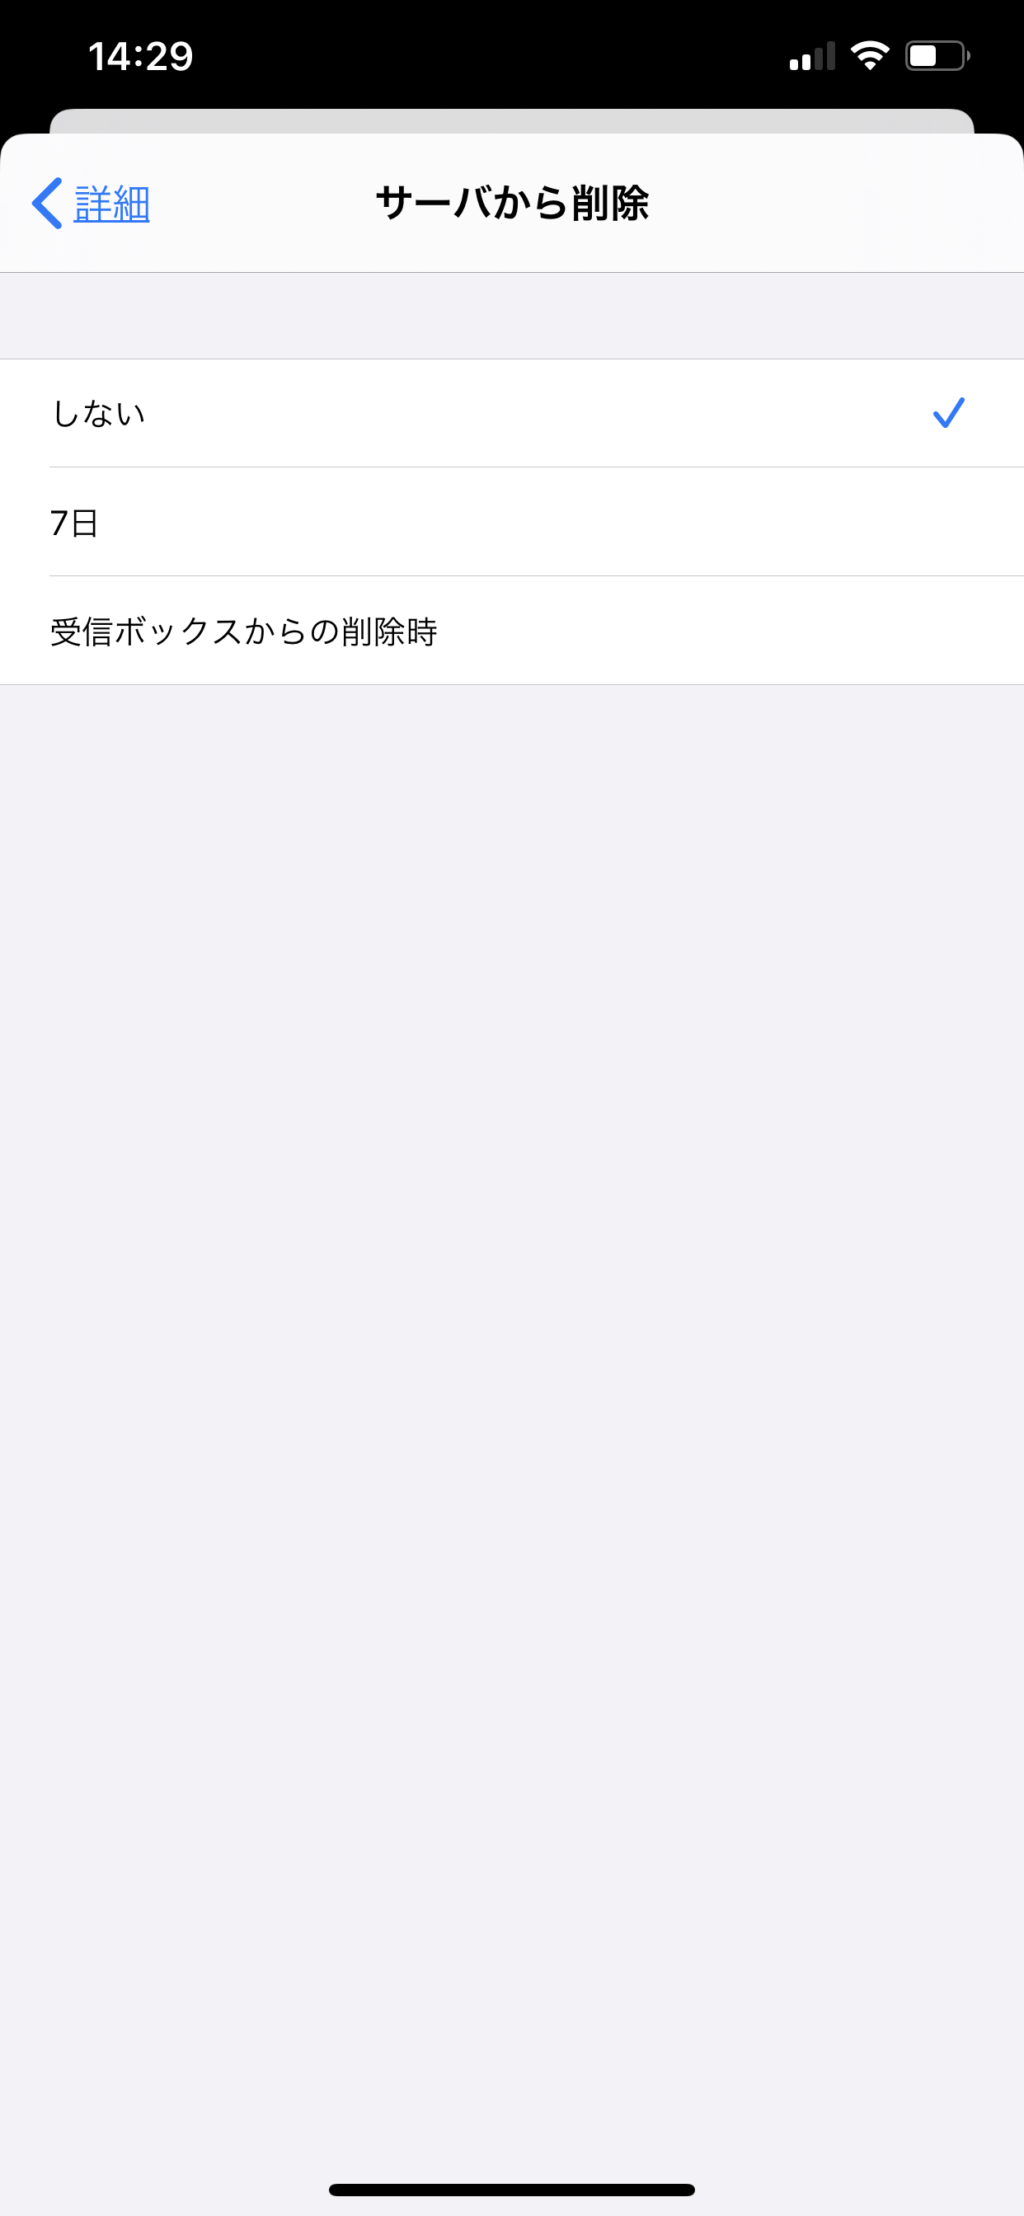 ロリポップメールのiPhoneでのsmtp設定